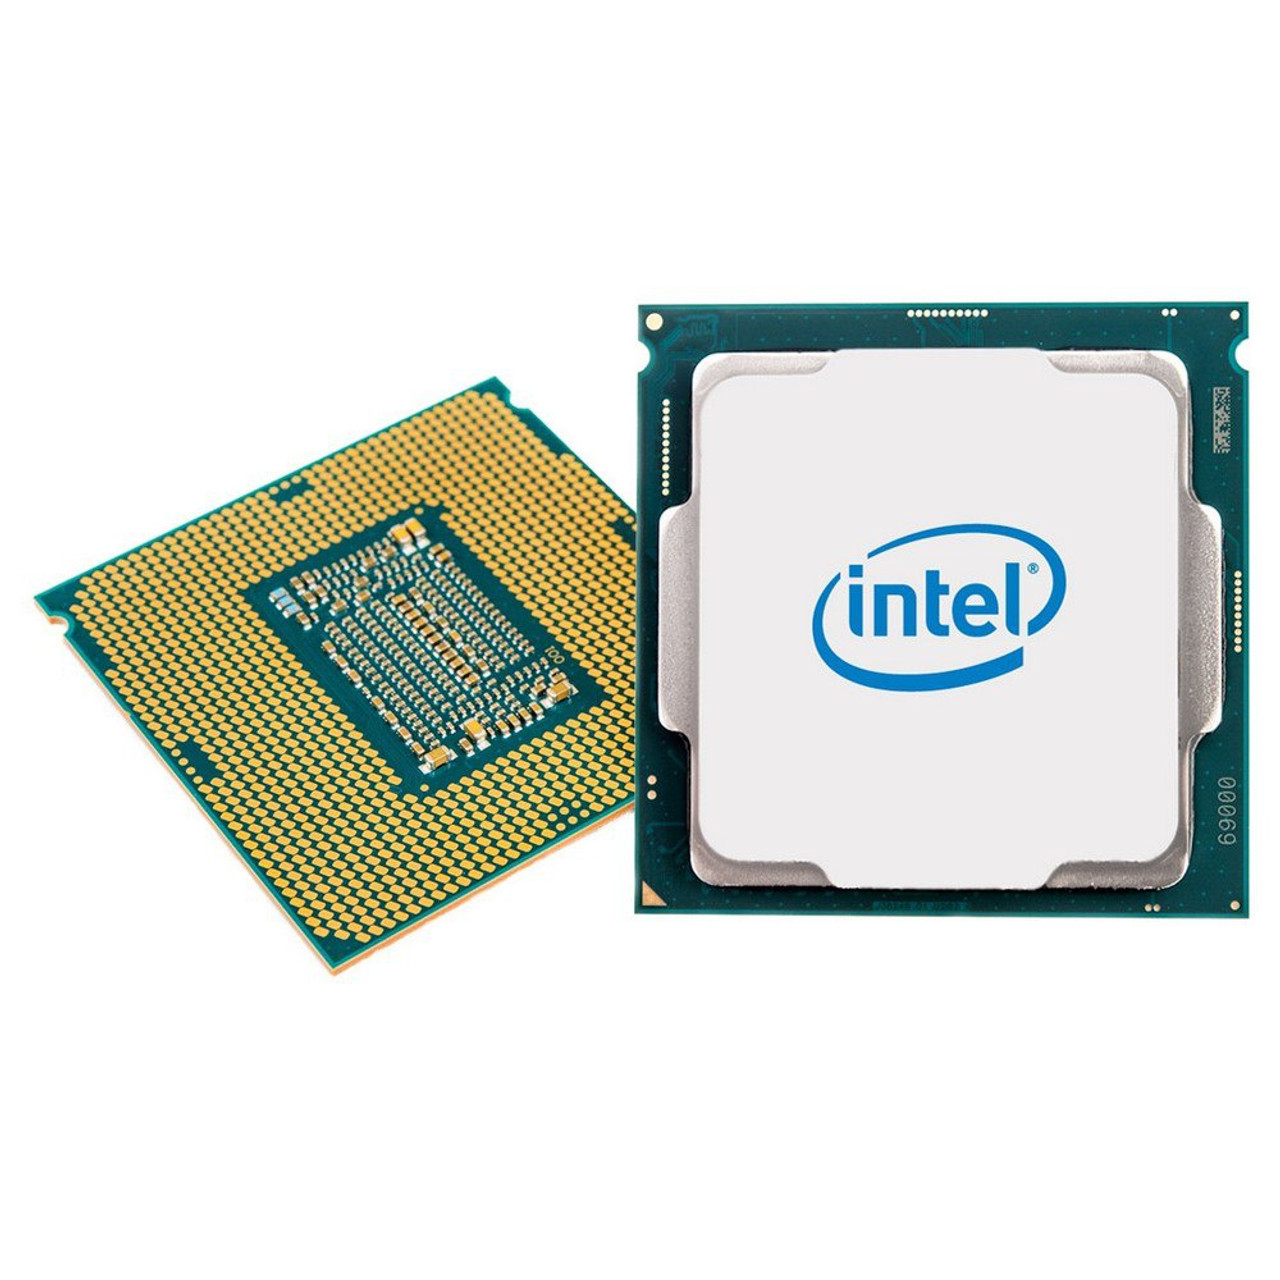 インテル パソコン Intel Xeon E5405 2.0 GHz 12M L2 Cache 1333MHz FSB LGA771 Active  Quad- CPU